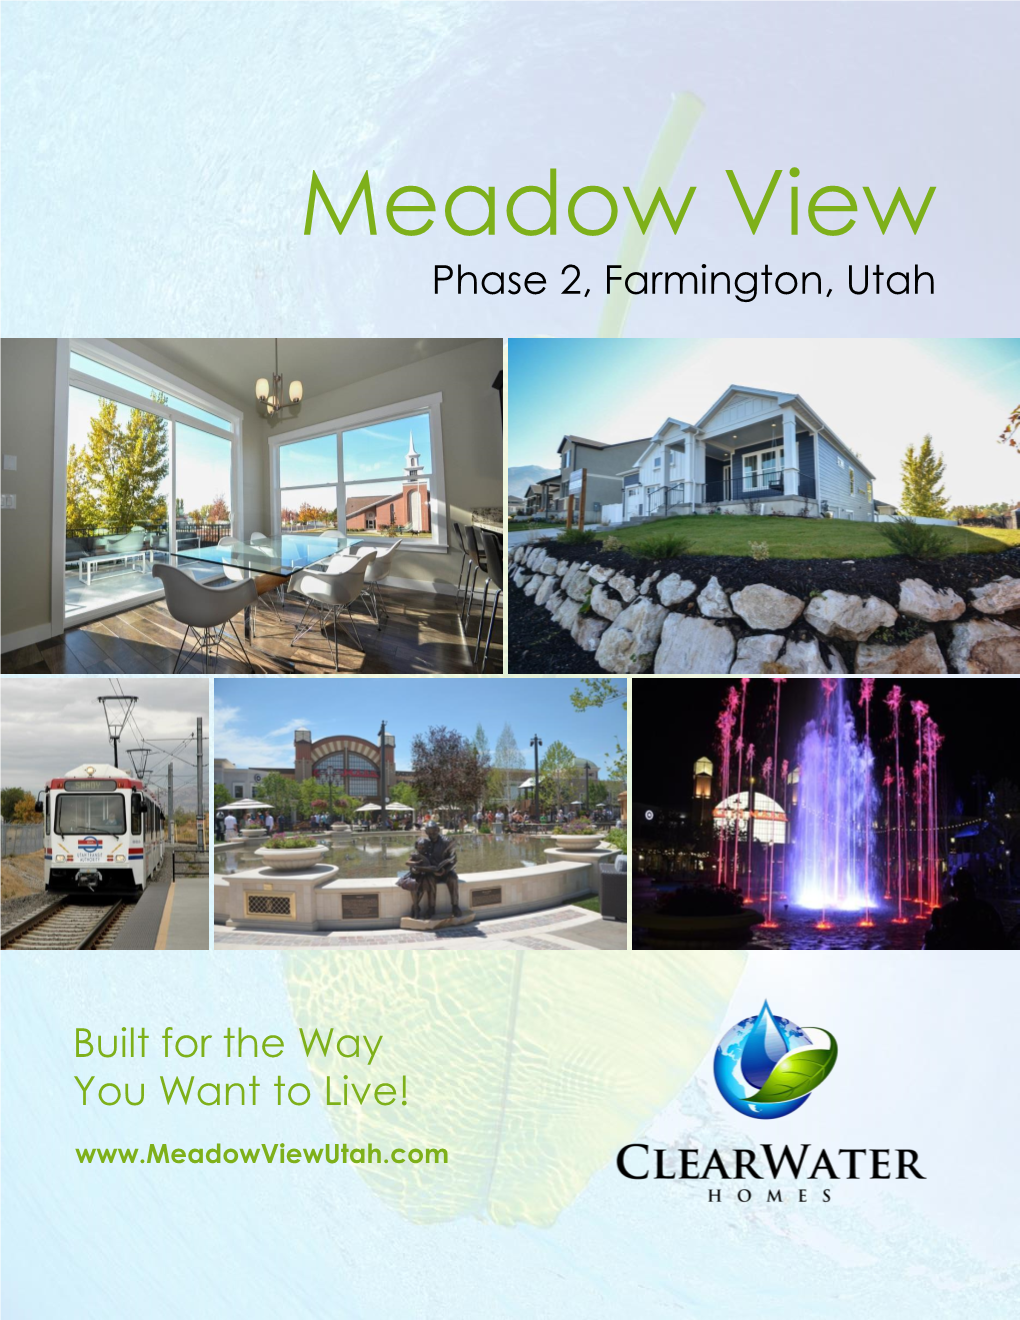 Meadow View Phase 2, Farmington, Utah